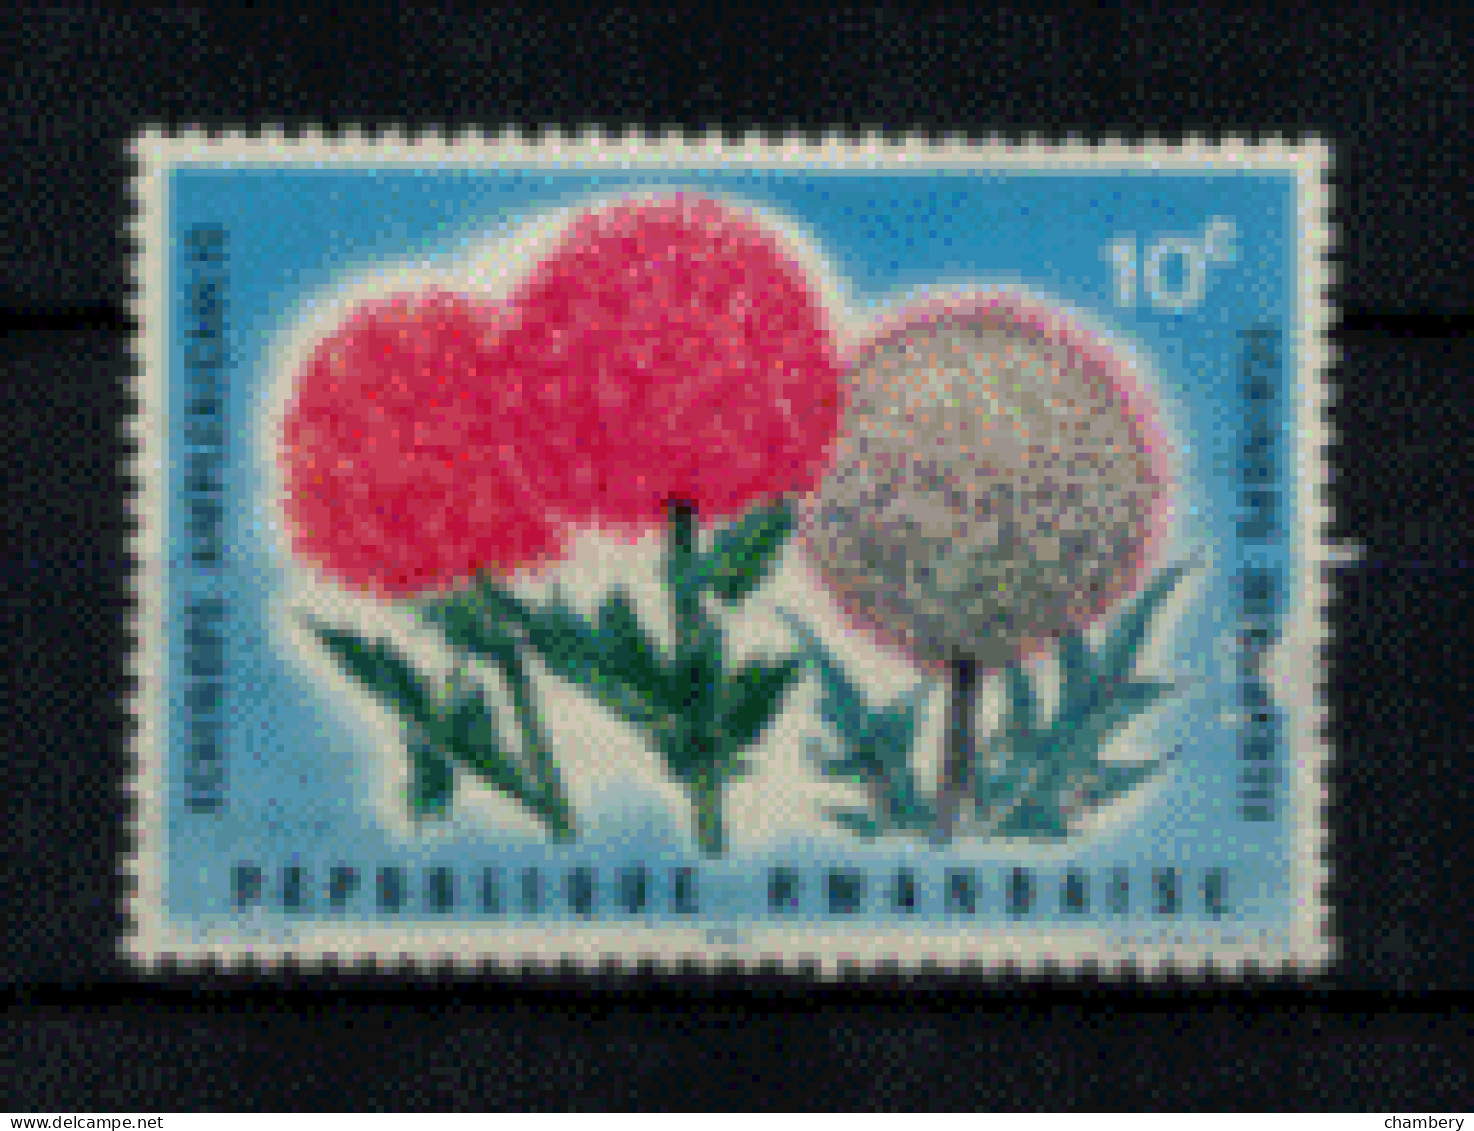 Rwanda - "Fleurs Diverses "Echinops Ampllexicaulis" - Oblitéré N° 148 De 1966 - Usati